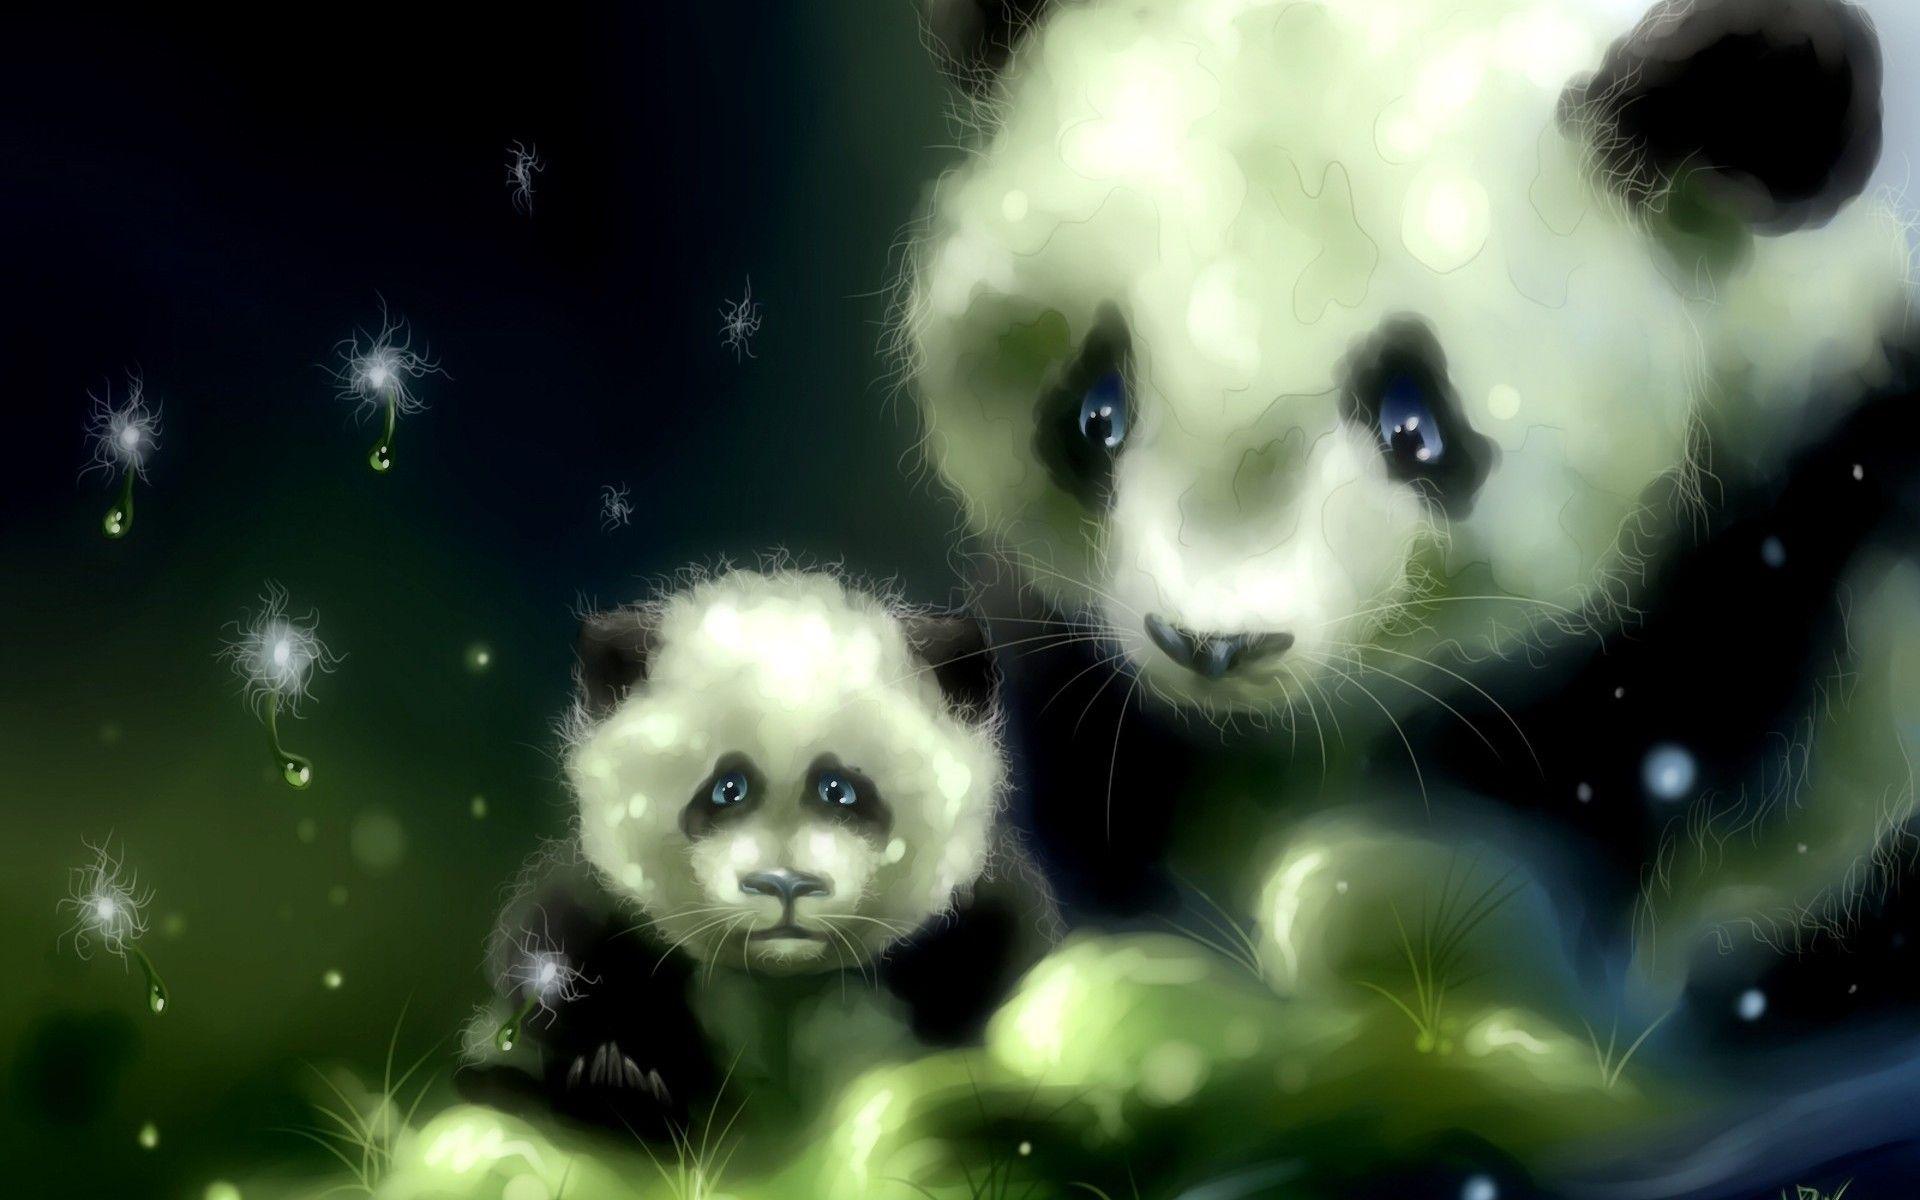 cute panda anime wallpaper